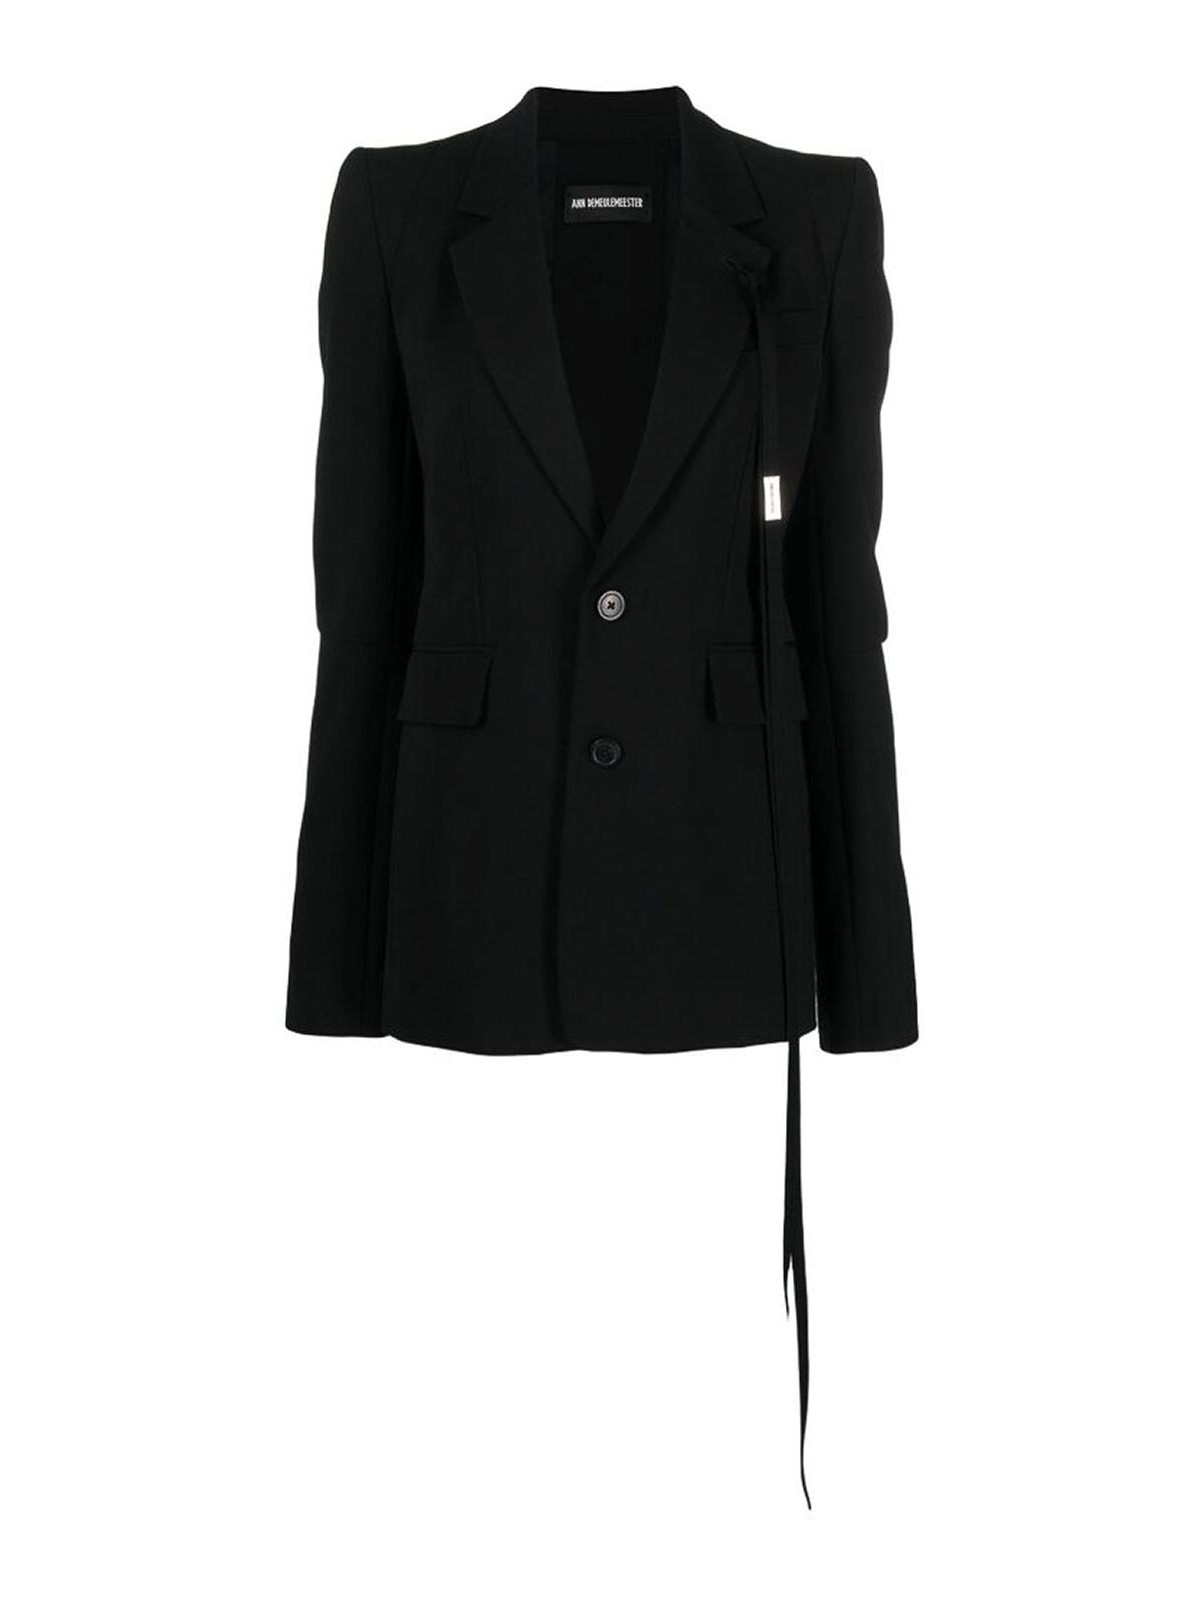 Shop Ann Demeulemeester Black Notched Lapels Button Jacket